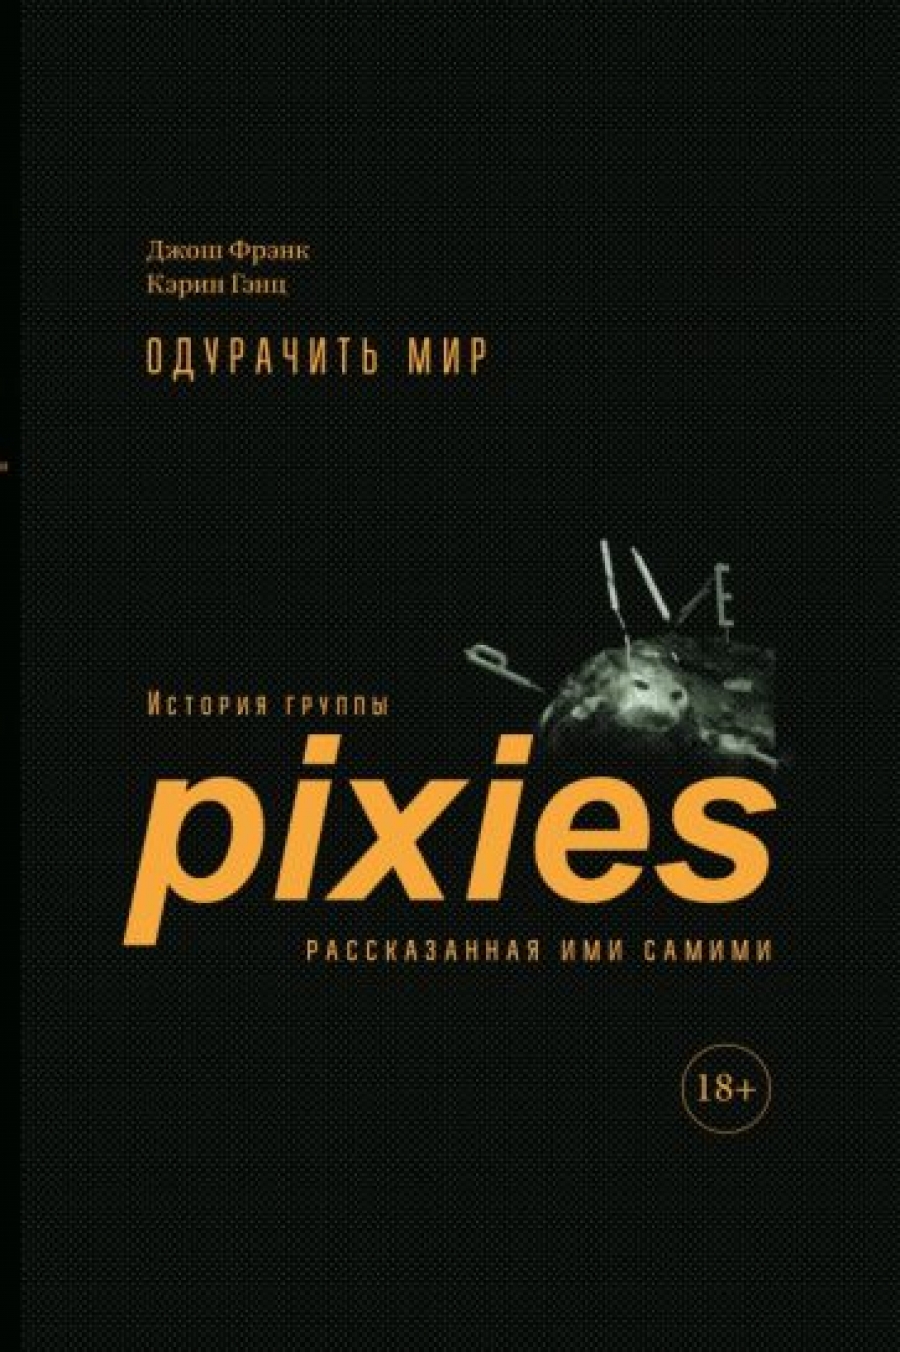    .   Pixies,    